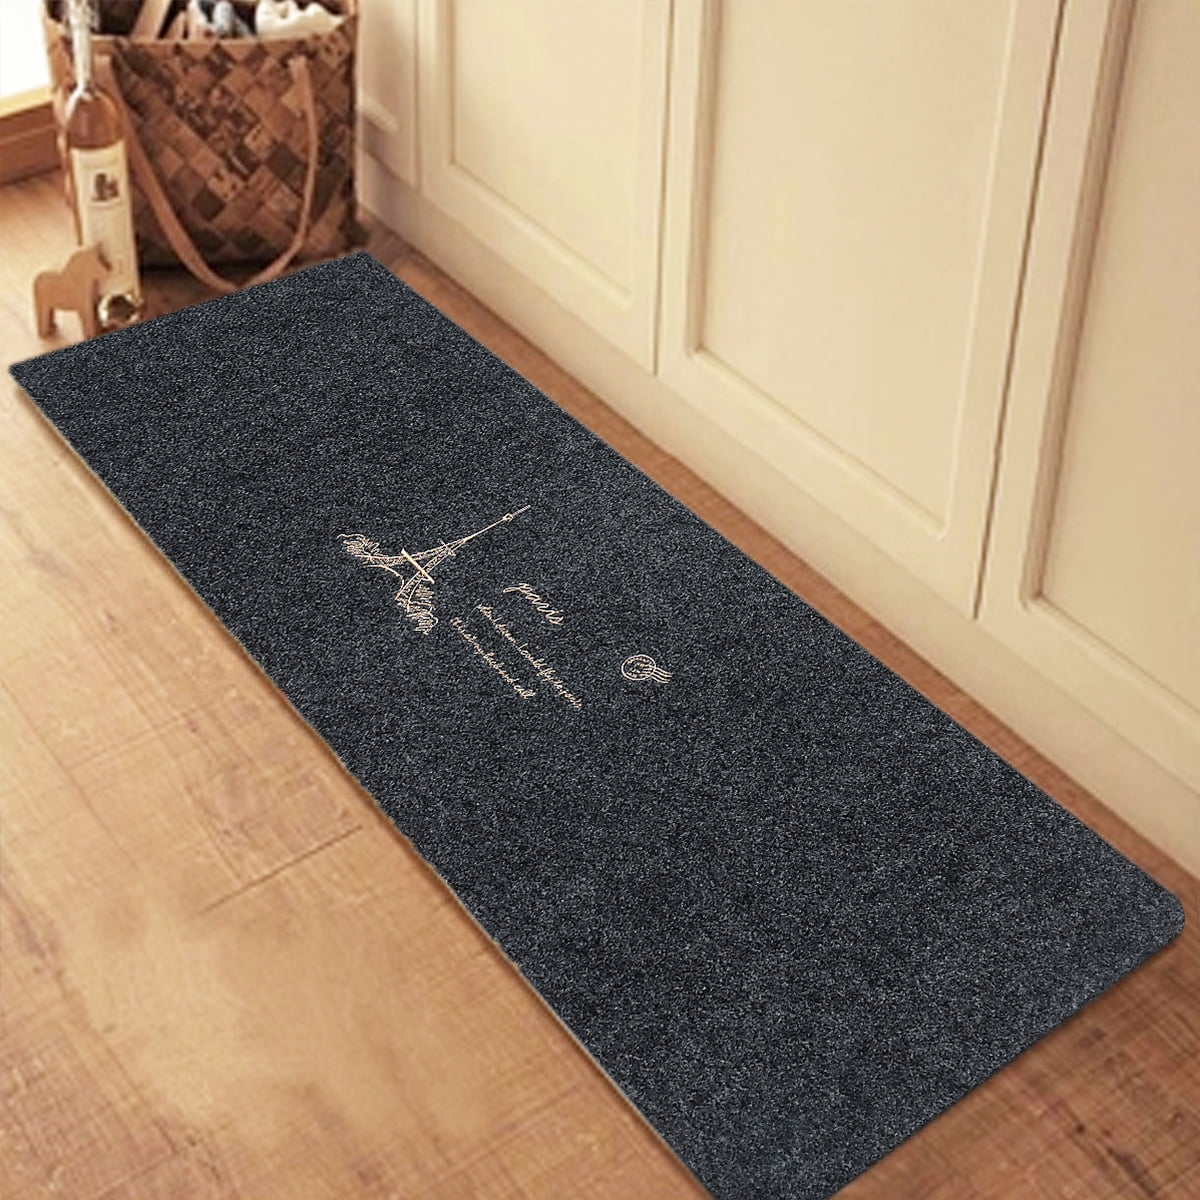 Details about   1/2PCS Kitchen Floor Carpet Area Rug Non-Slip Bathroom Absorbent Door Pad Mat 